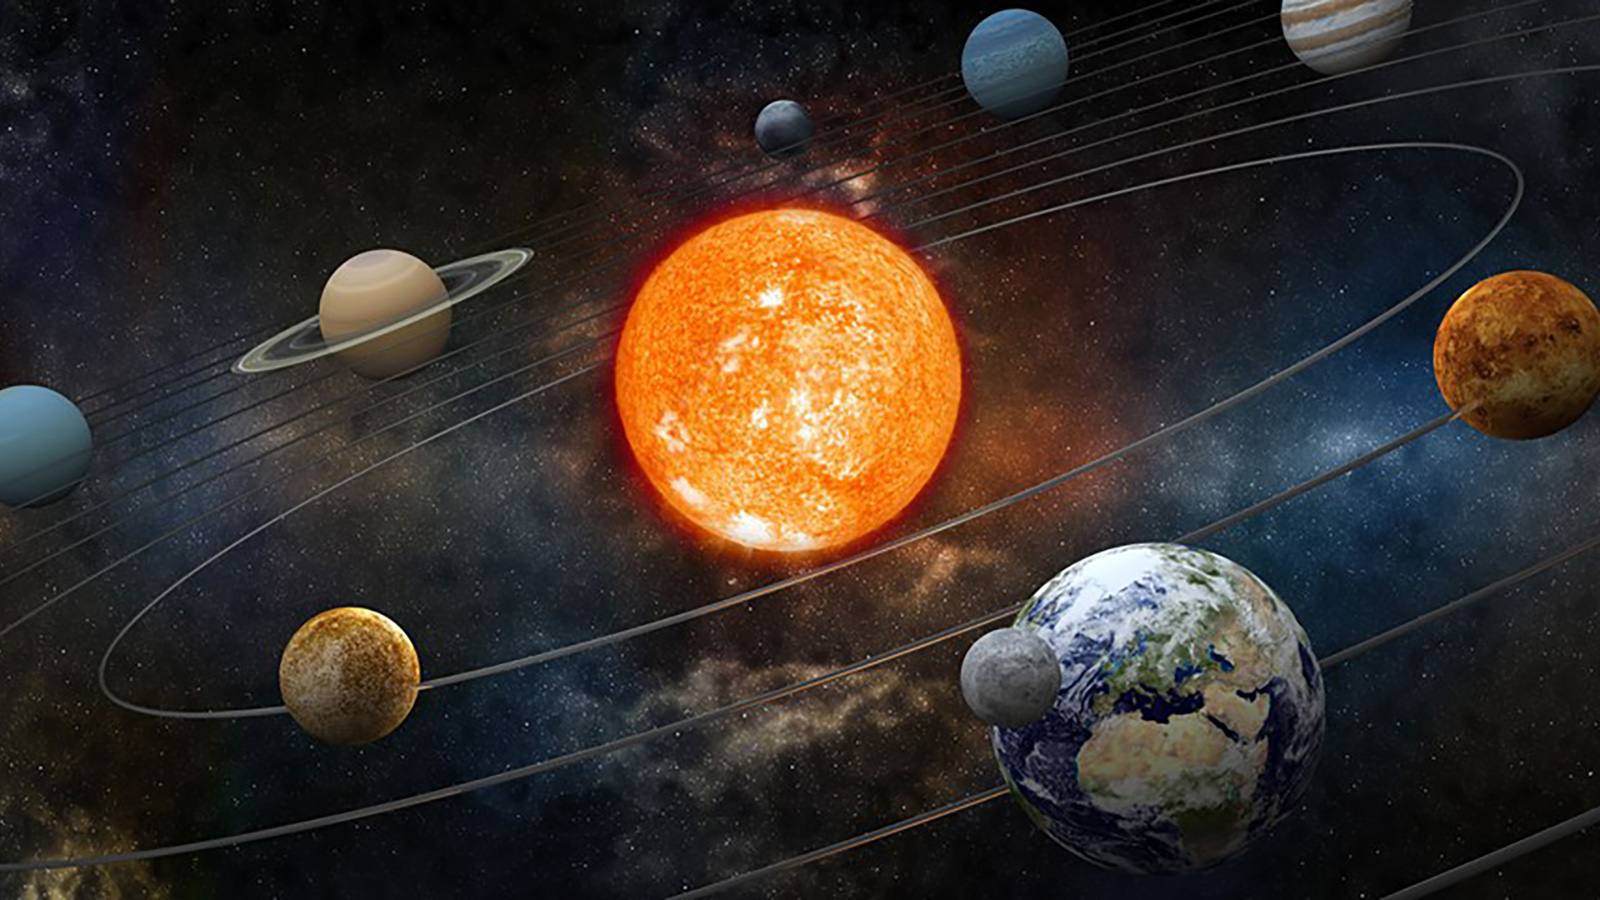 توقع العلماء أن هناك ما يقترب من 10 مليارات كوكب شبيه بالأرض يدور الكثير منها حول نجوم كالشمس في النطاق الصالح للحياة